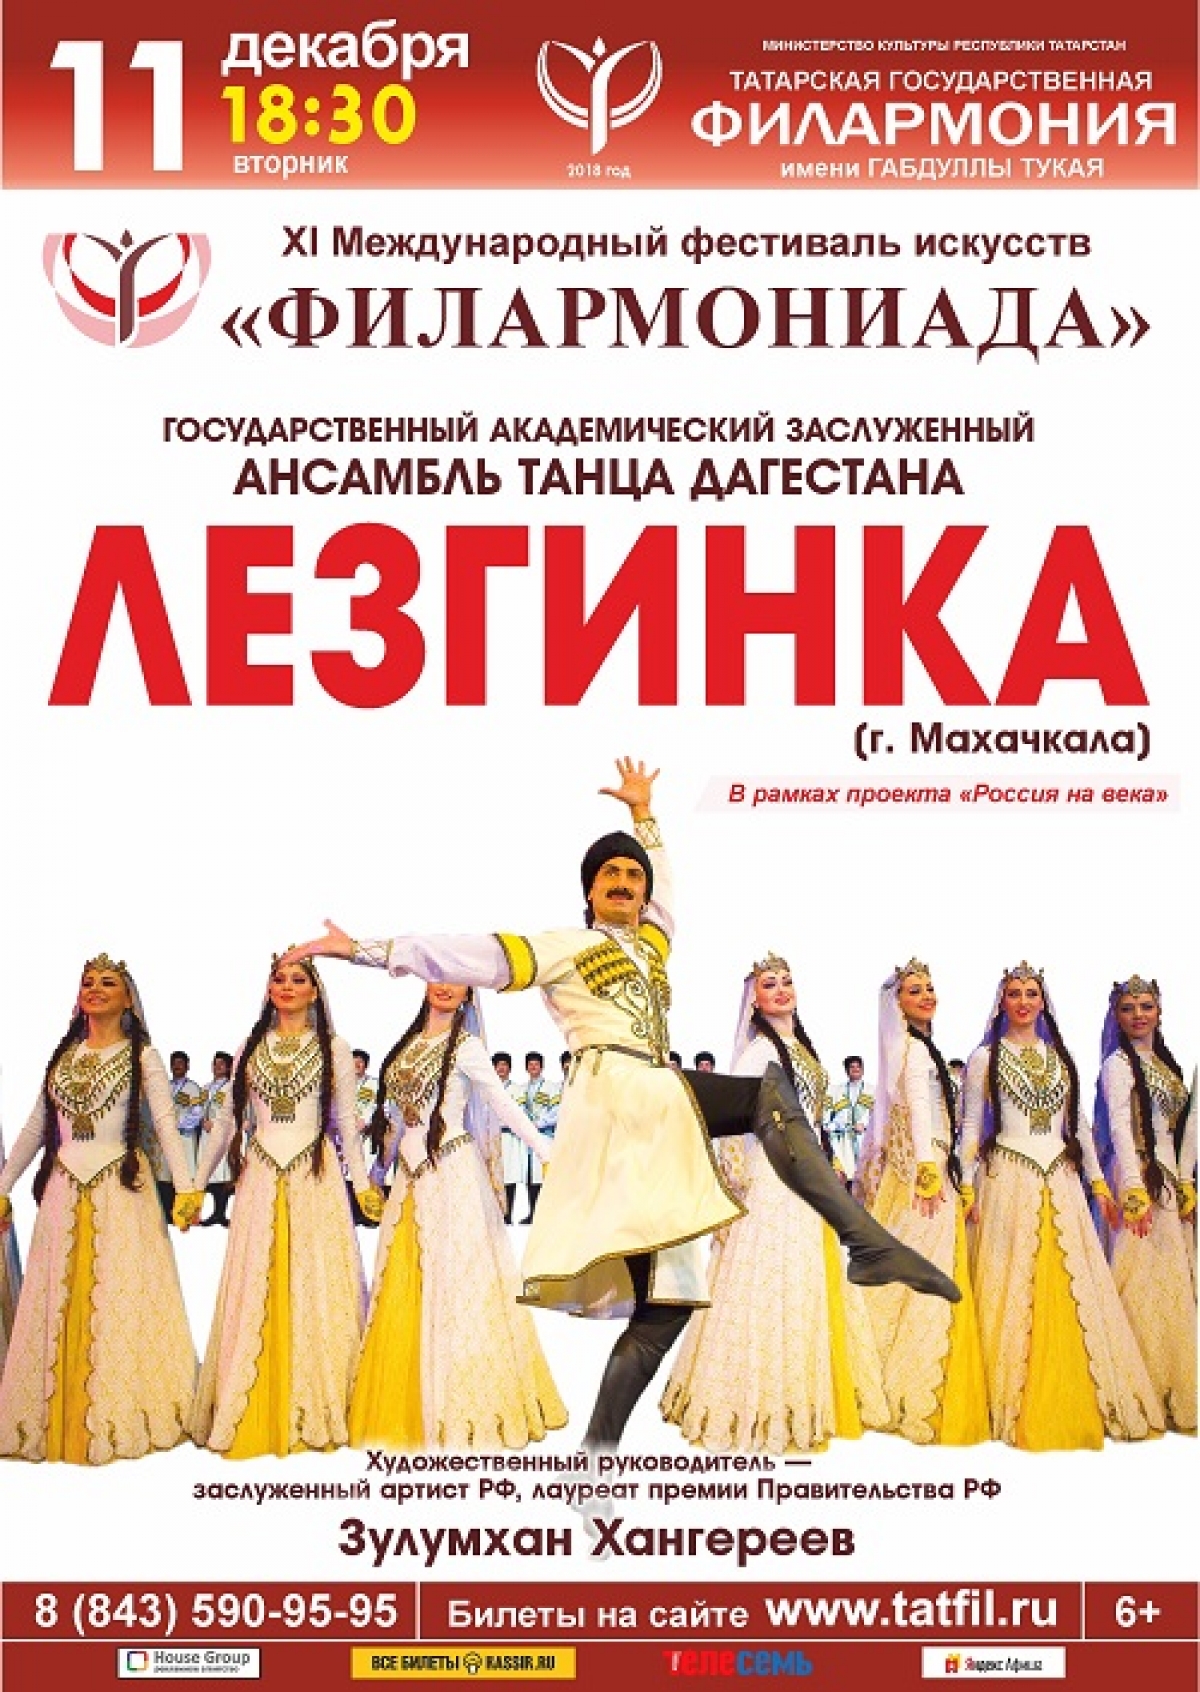 Седьмой вечер одиннадцатой «Филармониады» - ансамбль танца Дагестана «Лезгинка»